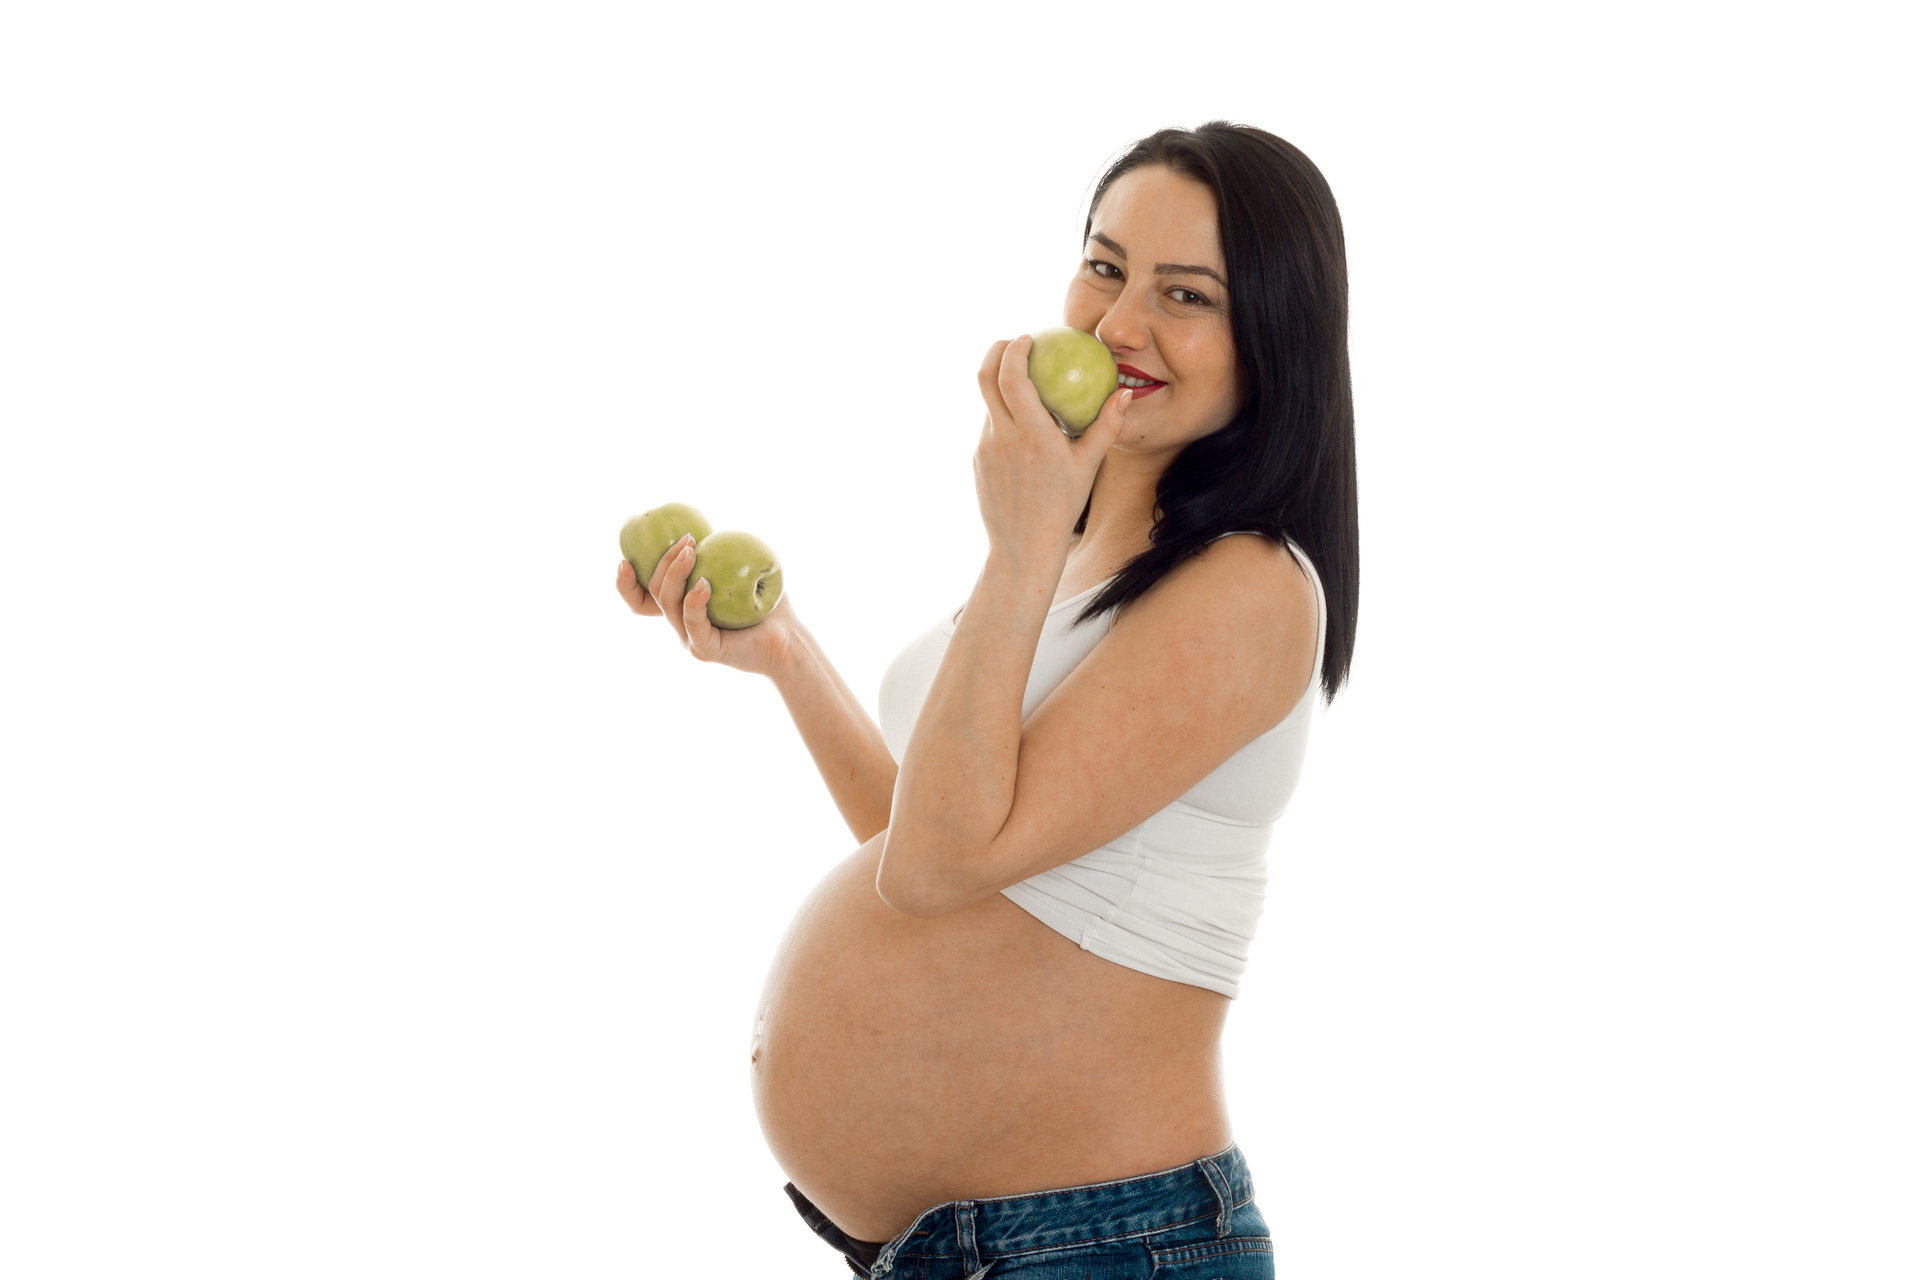 Na tym ujmującym obrazku widzimy kobietę w ciąży, która trzyma w dłoniach kilka zielonych jabłek i zbliża je do ust. Jej uśmiechnięta twarz i promienne spojrzenie sugerują, że owoc ten dostarcza jej wiele przyjemności i korzyści zdrowotnych. Kobieta ubrana jest w wygodną bluzę z długim rękawem, co sugeruje, że jest to zdjęcie zrobione podczas chłodnej pory roku. W tle widać delikatną, pastelową ścianę oraz kilka liści drzewa, co nadaje całej scenie spokojnego i naturalnego charakteru. To piękne zdjęcie idealnie oddaje radość i satysfakcję, jaką kobieta może czerpać z jedzenia zdrowych i smacznych owoców w czasie ciąży.